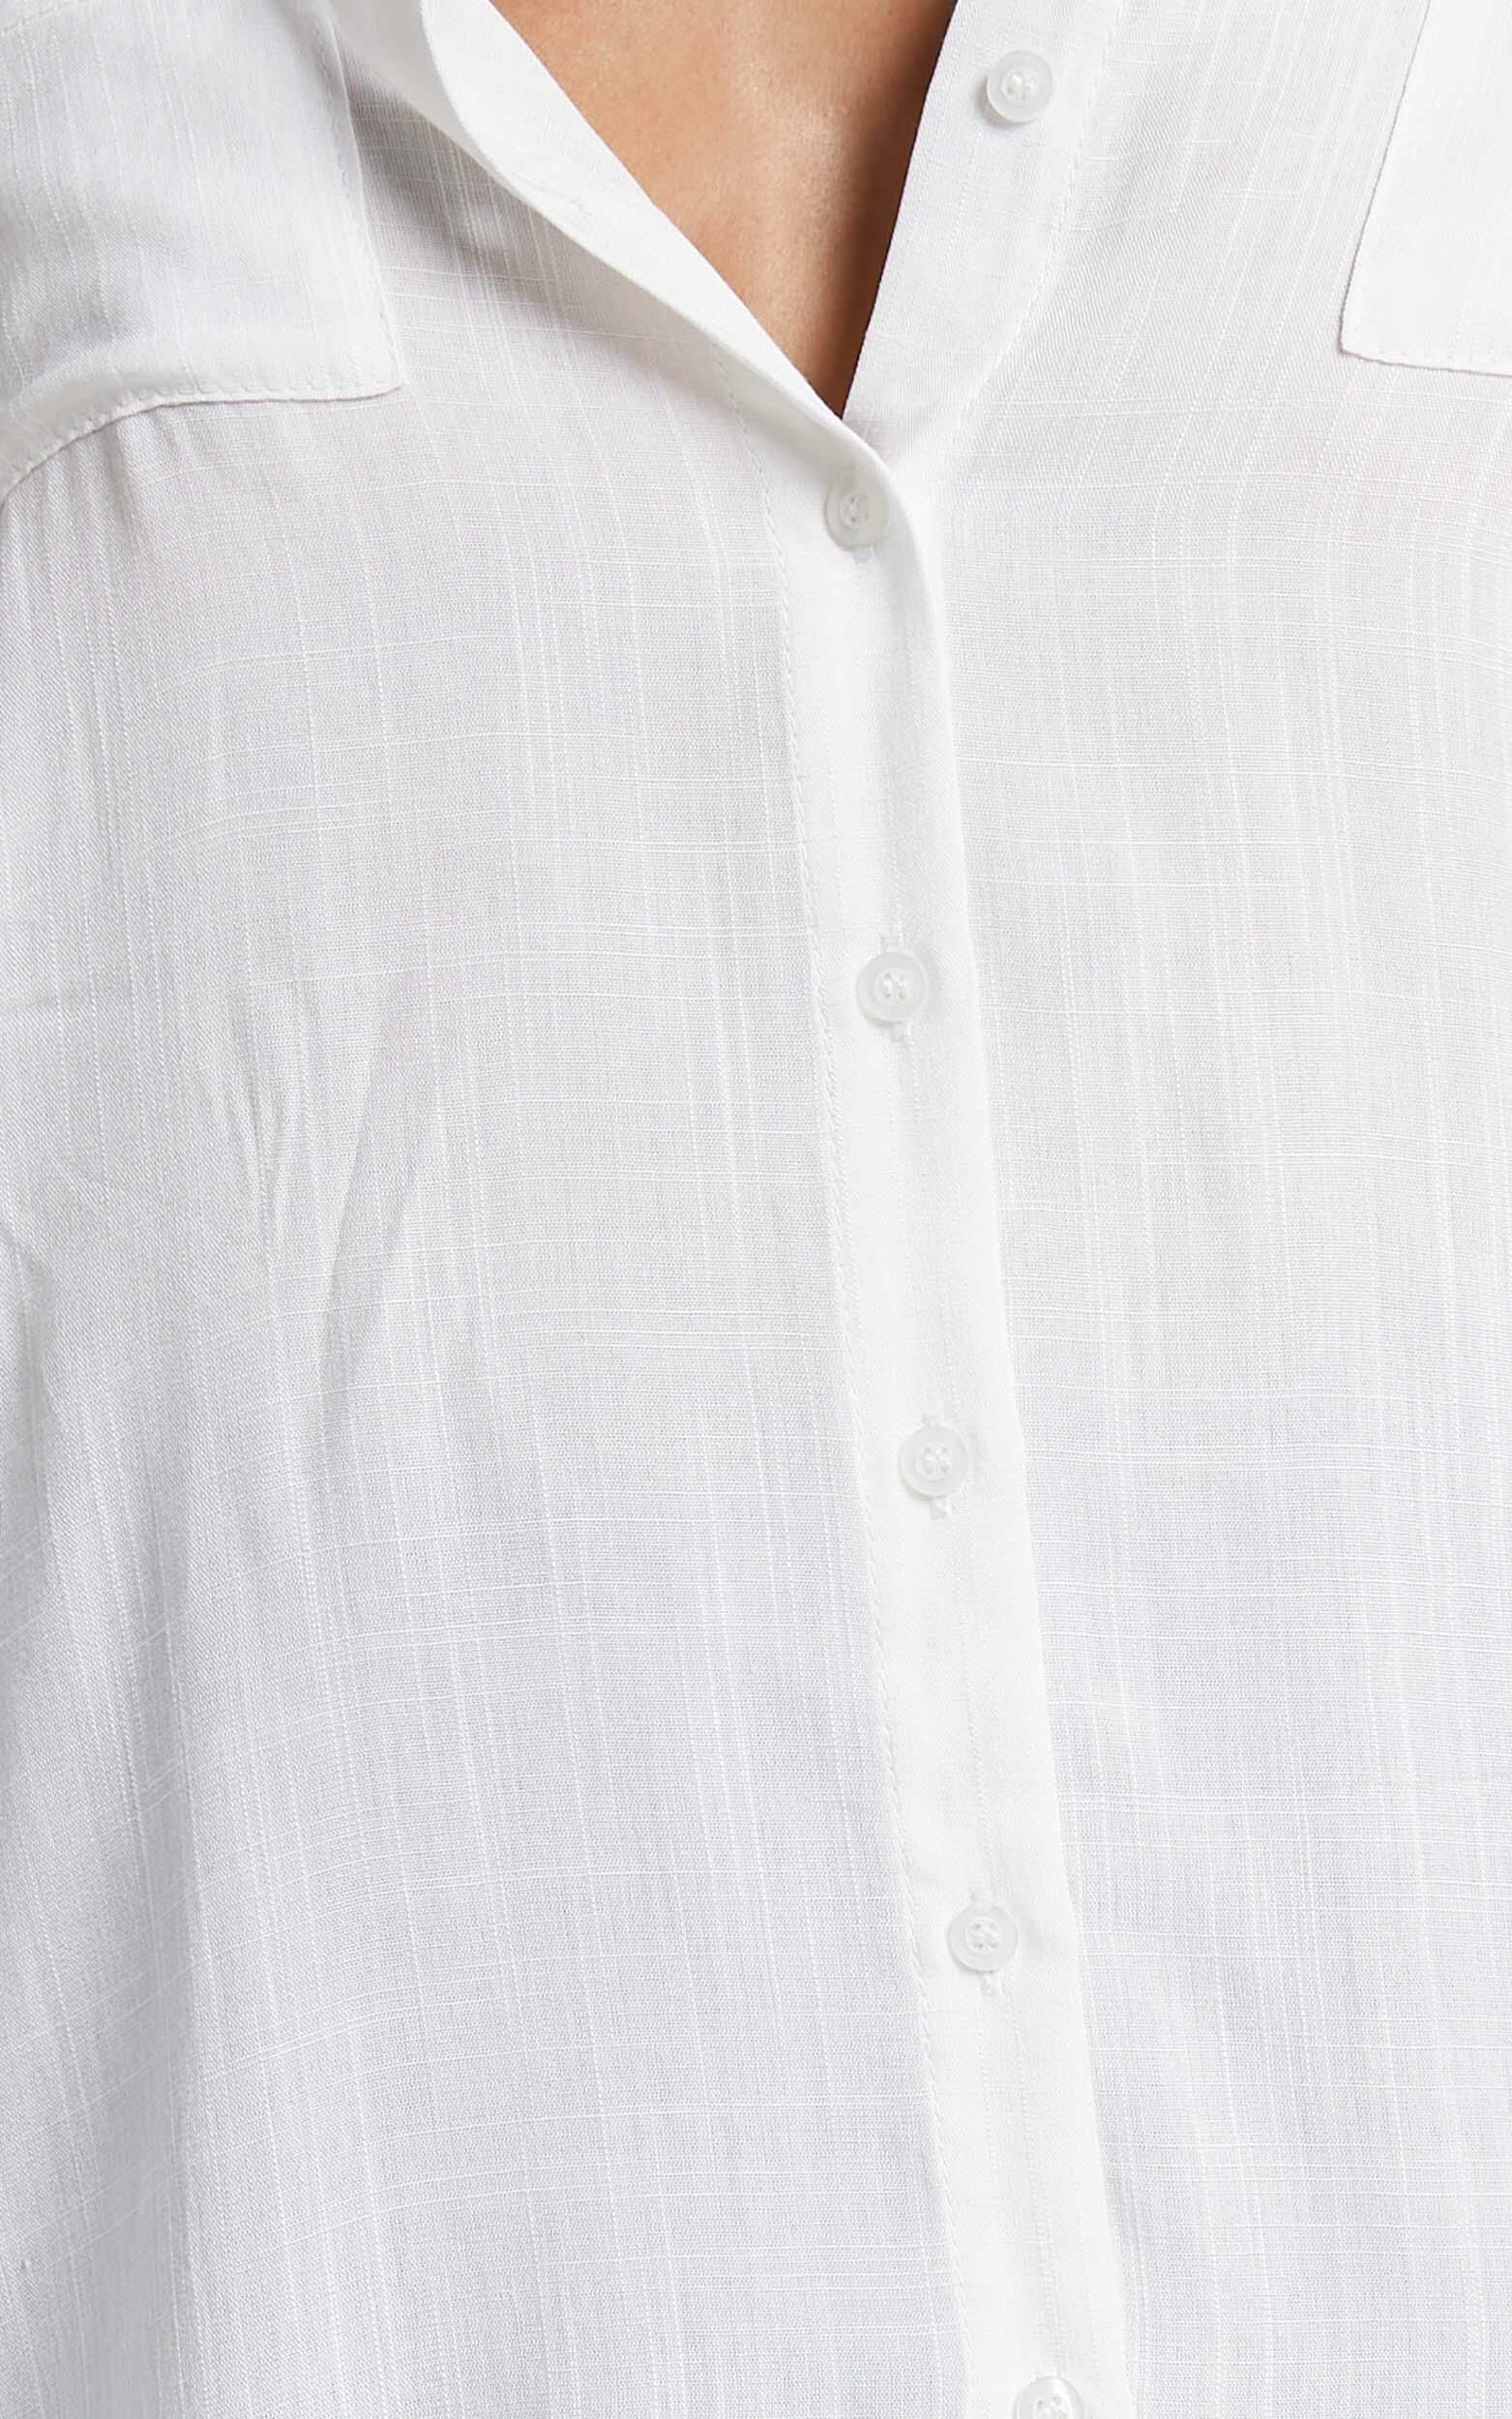 Amaka Shirt in White | Showpo